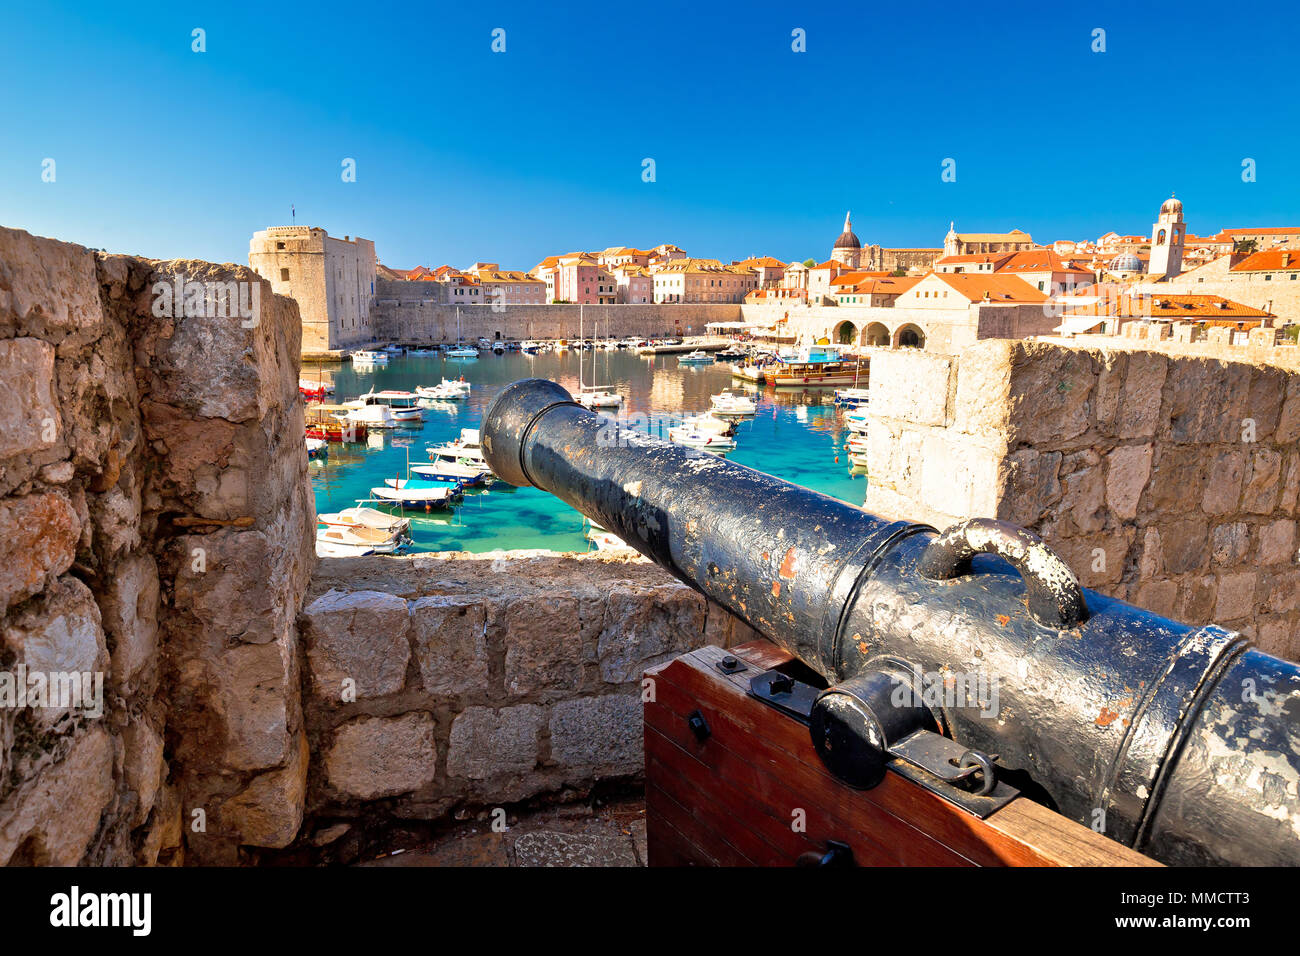 Le port de Dubrovnik, monuments et murs de défense formulaire d'affichage sur les murs, cannon, région de Croatie Dalmatie Banque D'Images